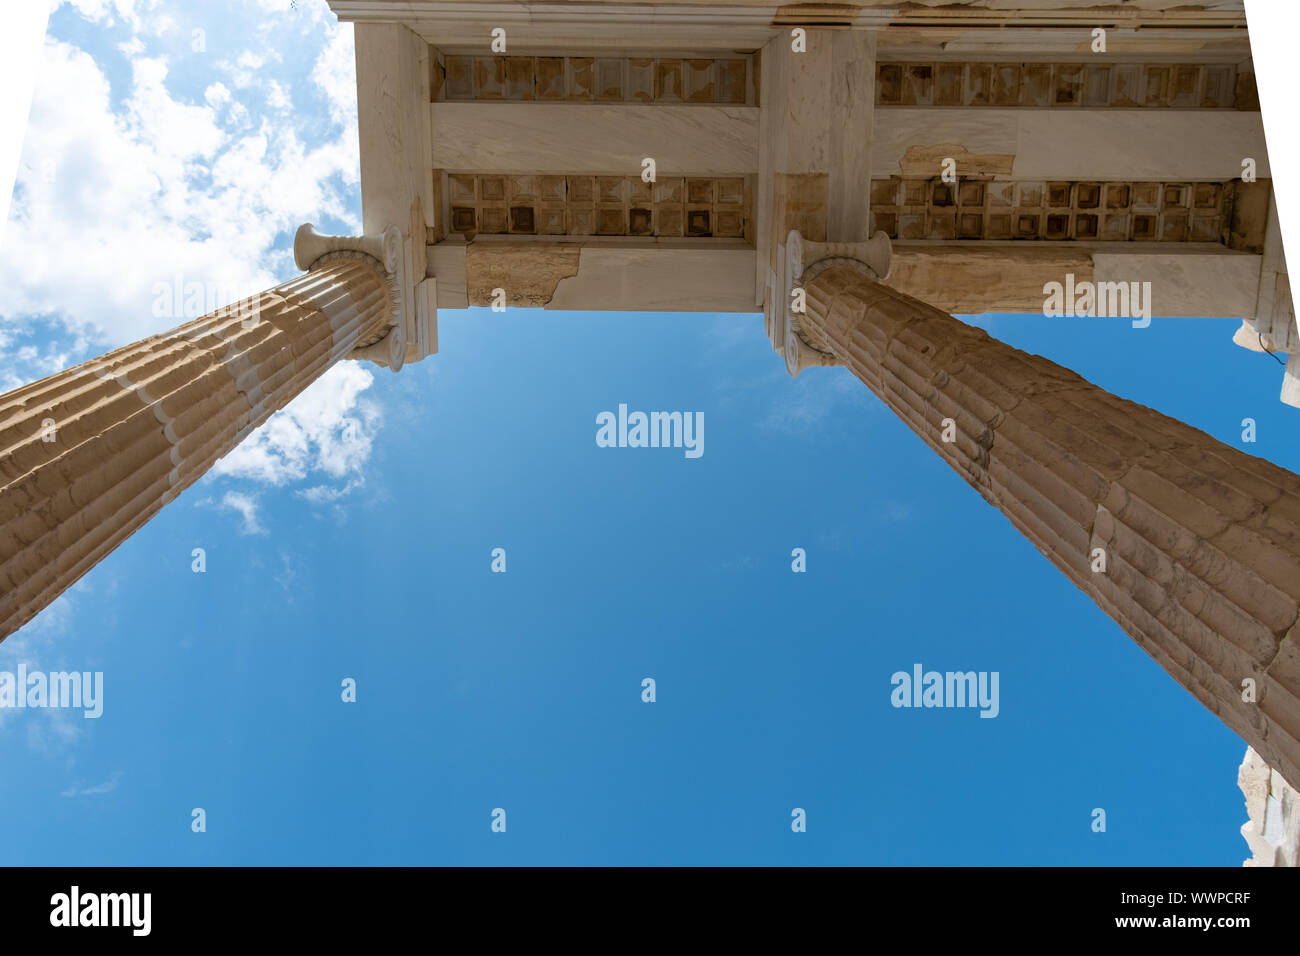 Impressionen von der Akropolis von Athen - Tempel Spalten vor der Himmel Stockfoto